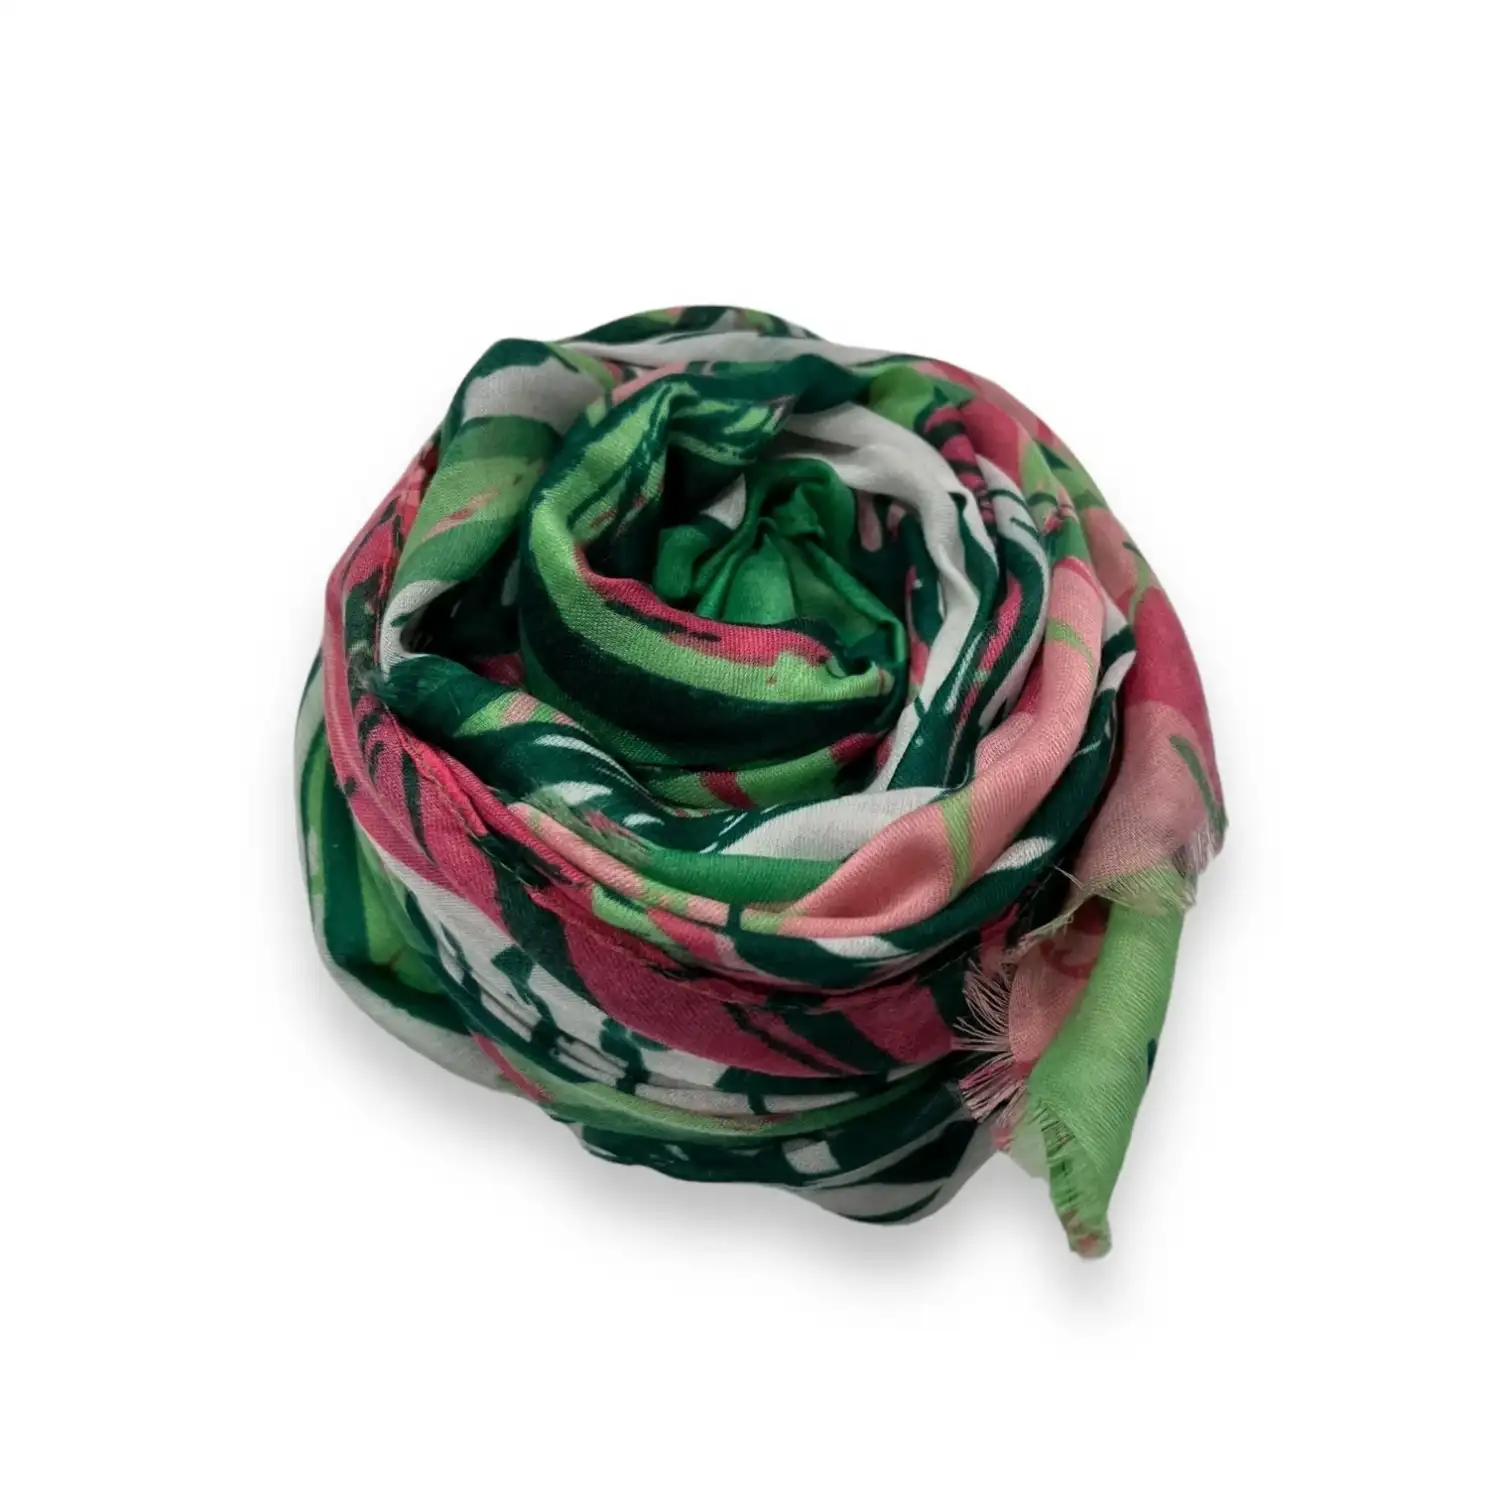 Tørklæde med palmeblade som motiv i grøn og andre flotte farver